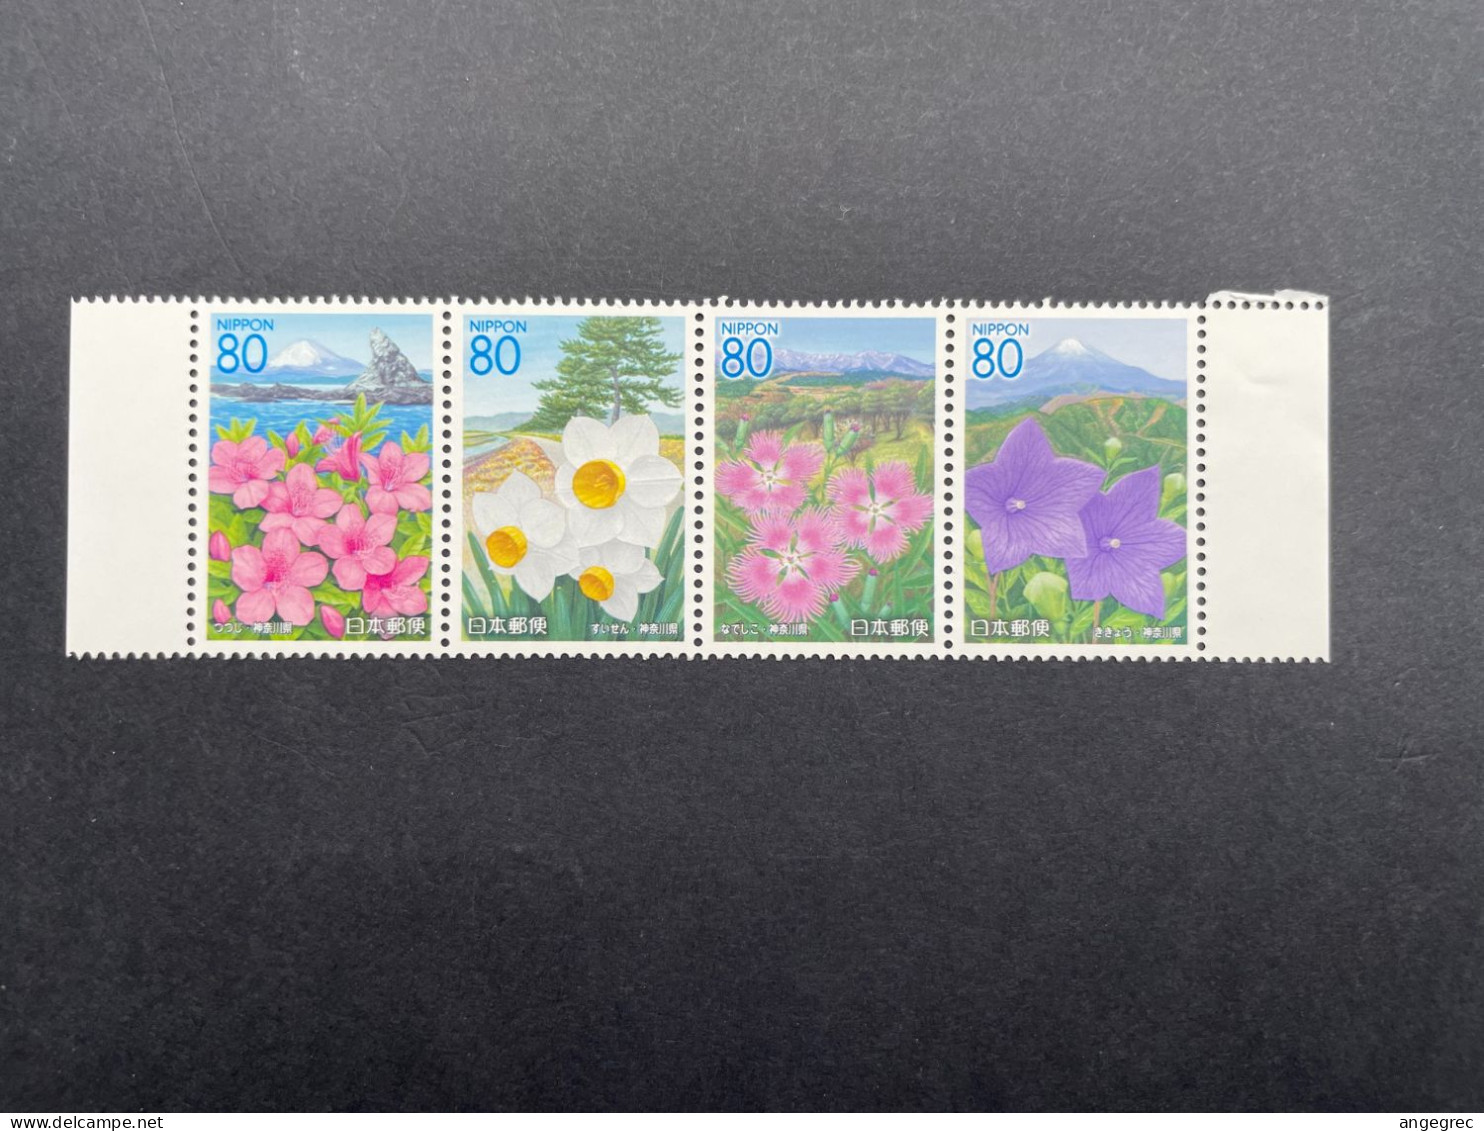 Timbre Japon 2005 Bande De Timbre/stamp Strip Fleur Flower N°3893 à 3896 Neuf ** - Lots & Serien